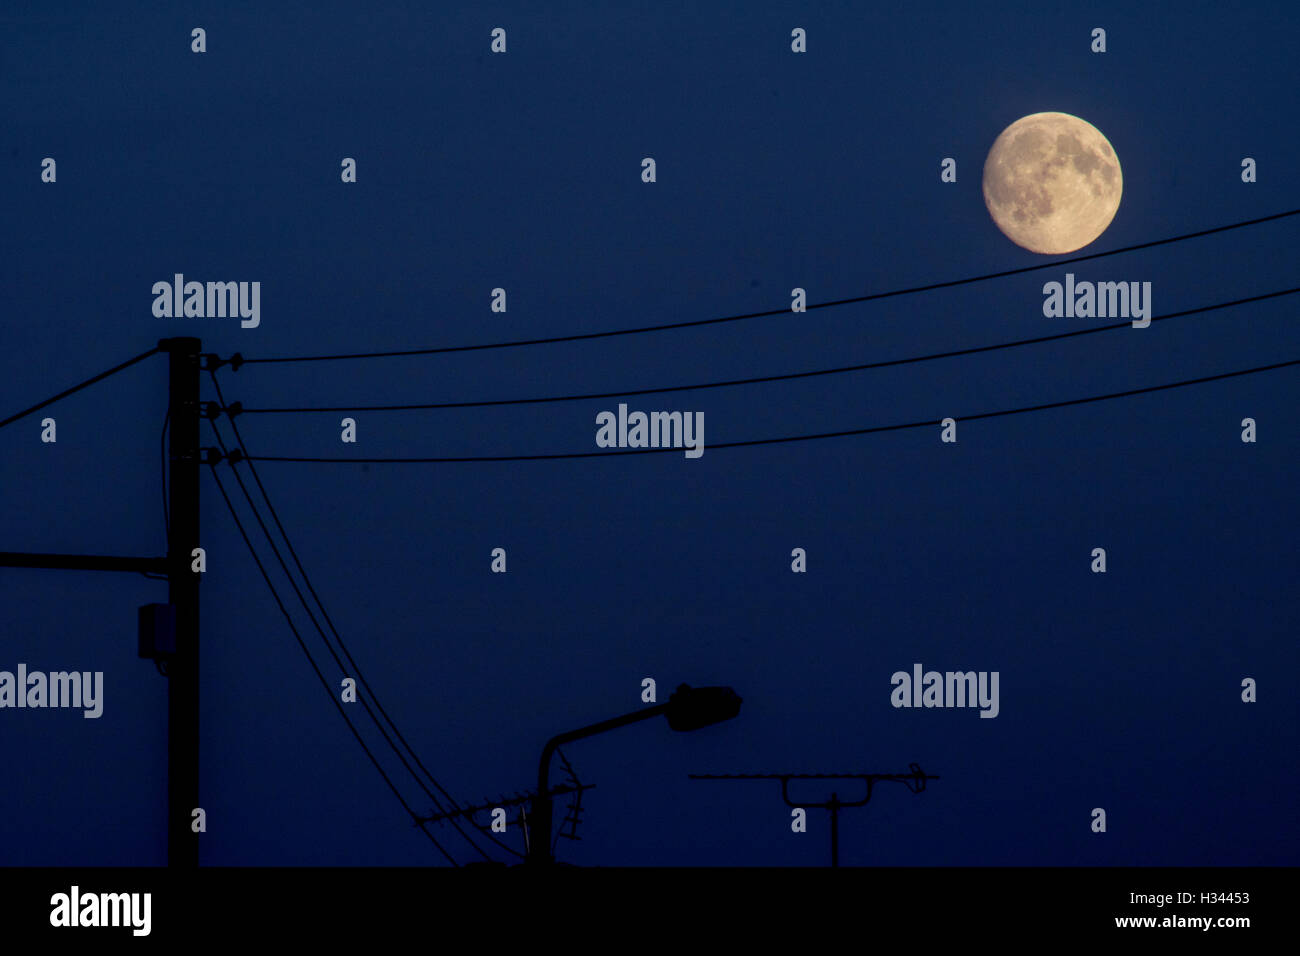 Pleine lune dans le ciel bleu sur les fils de téléphone, avec des silhouettes d'un lampadaire Banque D'Images